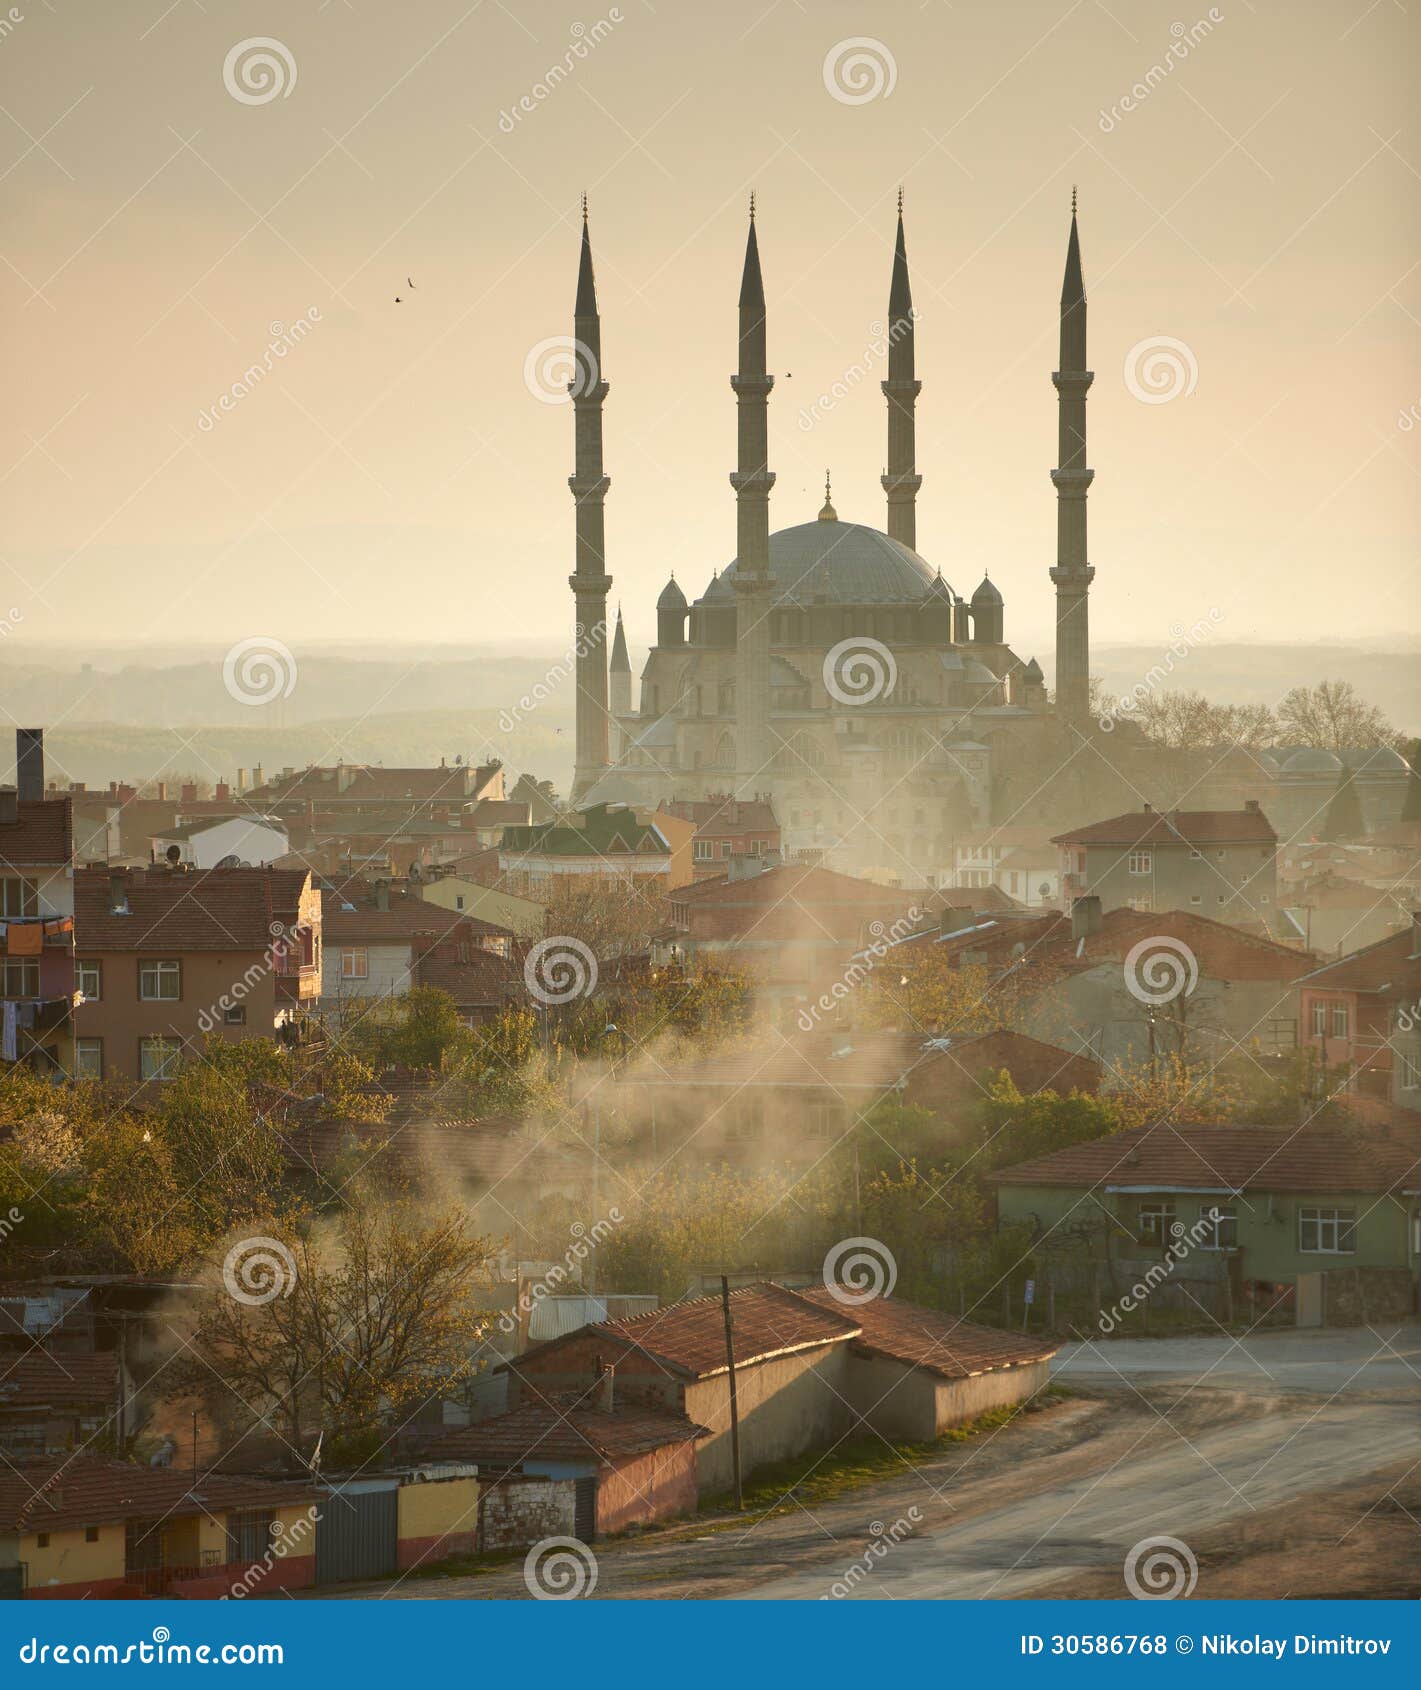 selimie mosque, edirne, turkey